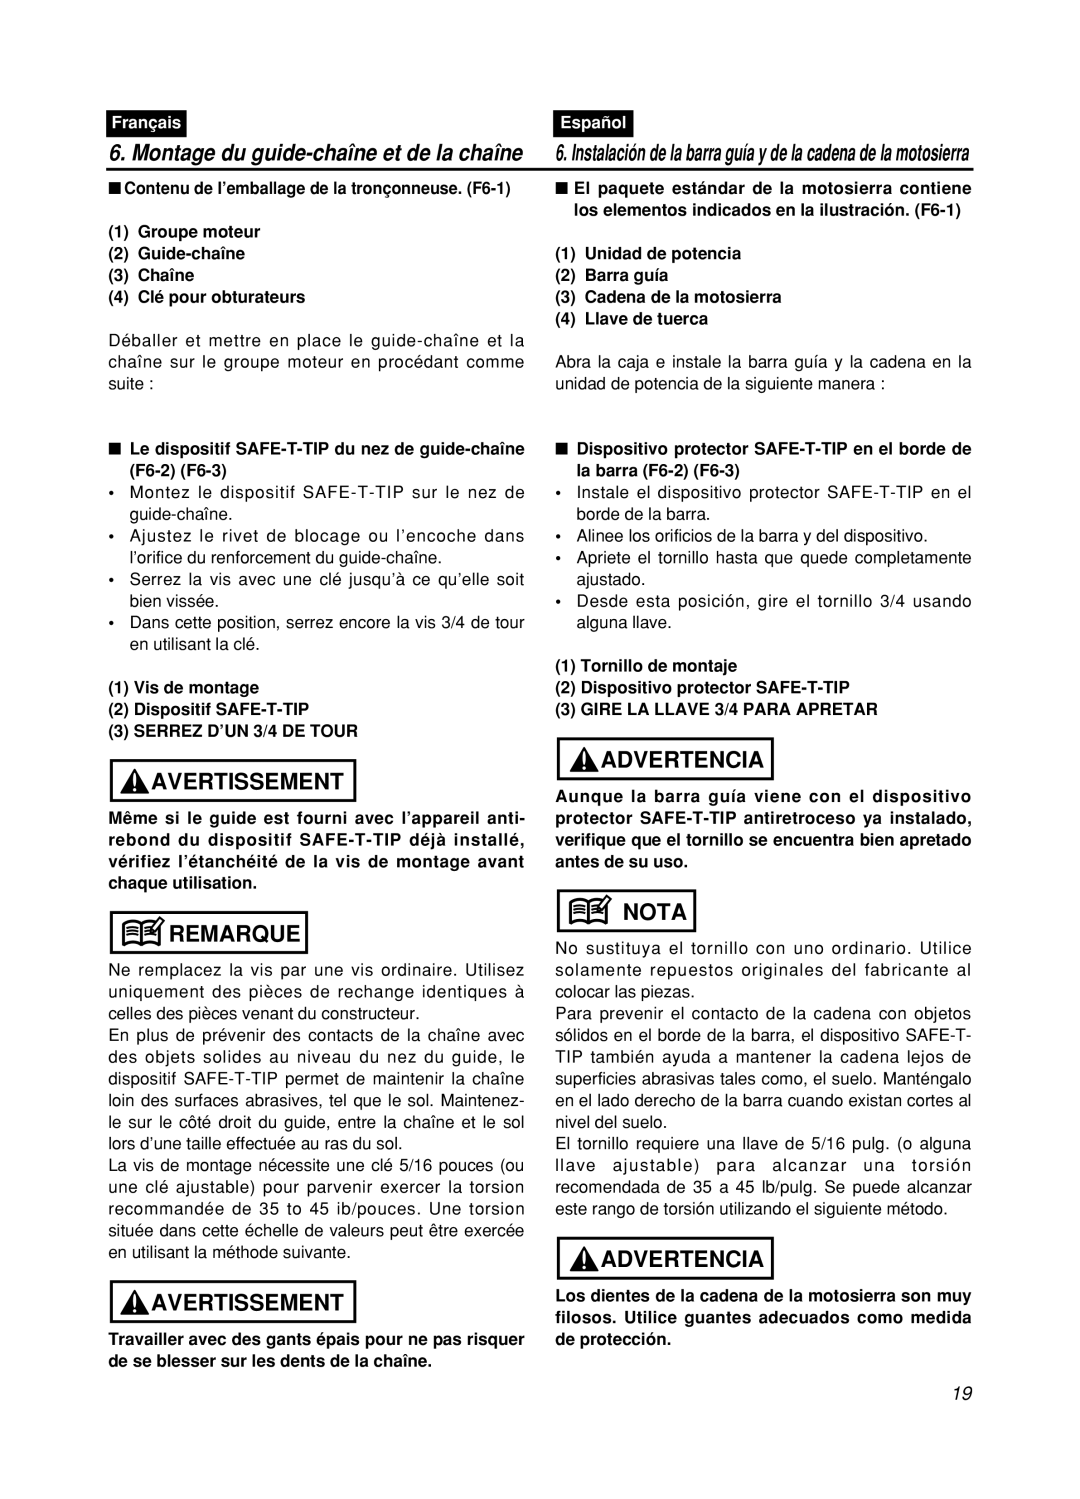 Zenoah GZ400 manual Montage du guide-chaîne et de la chaîne, Avertissement, Remarque, Advertencia, Nota, Français, Español 